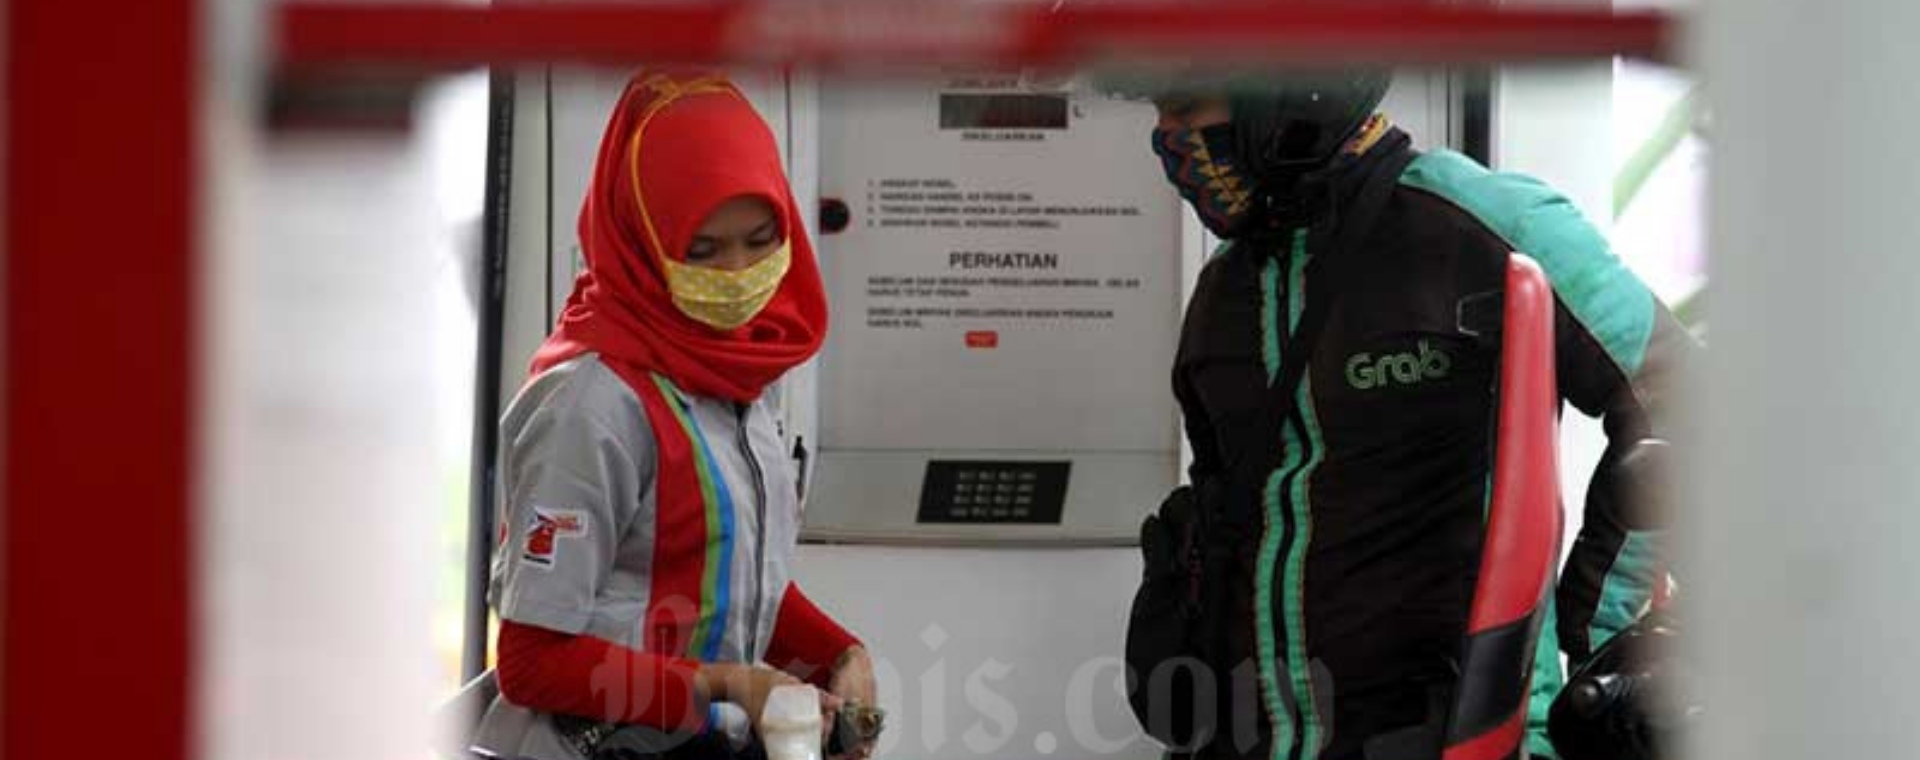 Pengemudi ojek online mengisi BBM di salah satu stasiun pengisian bahan bakar umum (SPBU) di Jakarta, Selasa (14/4/2020). Bisnis/Arief Hermawan P